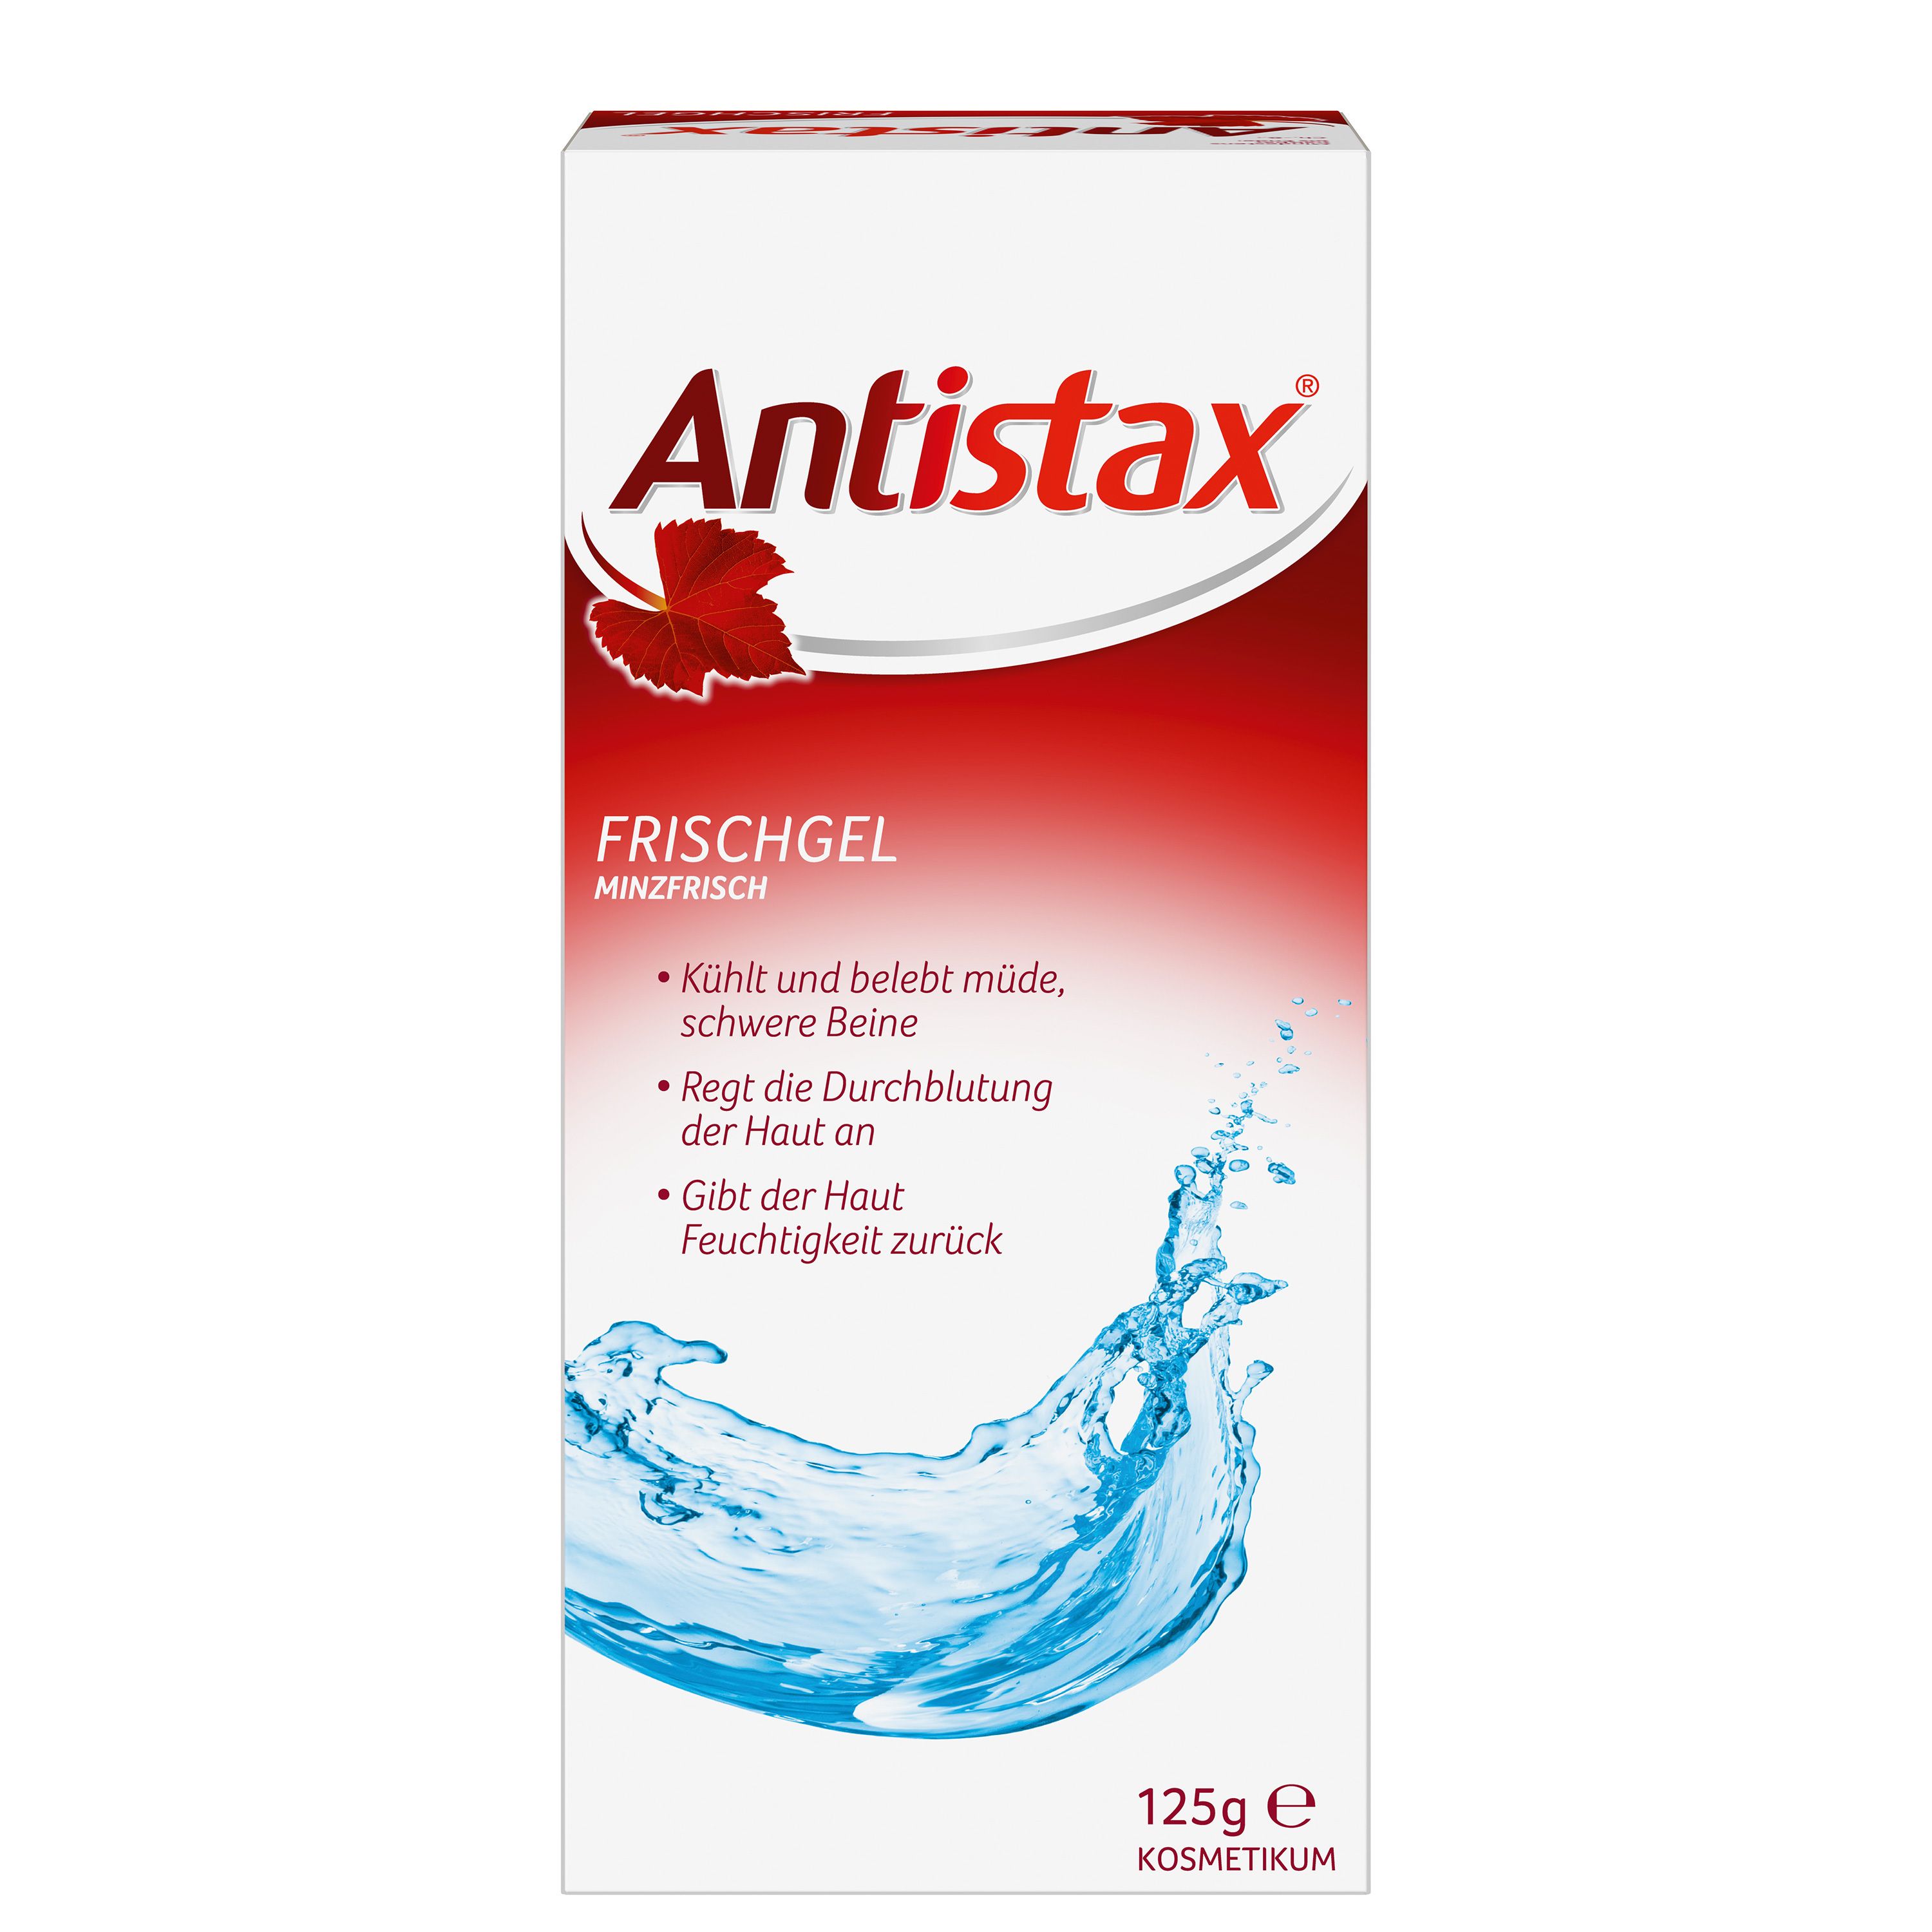 Antistax Frischgel, Kosmetikum, belebt müde & schwere Beinen - Jetzt 10% Rabatt mit dem Code stada2024 sparen*